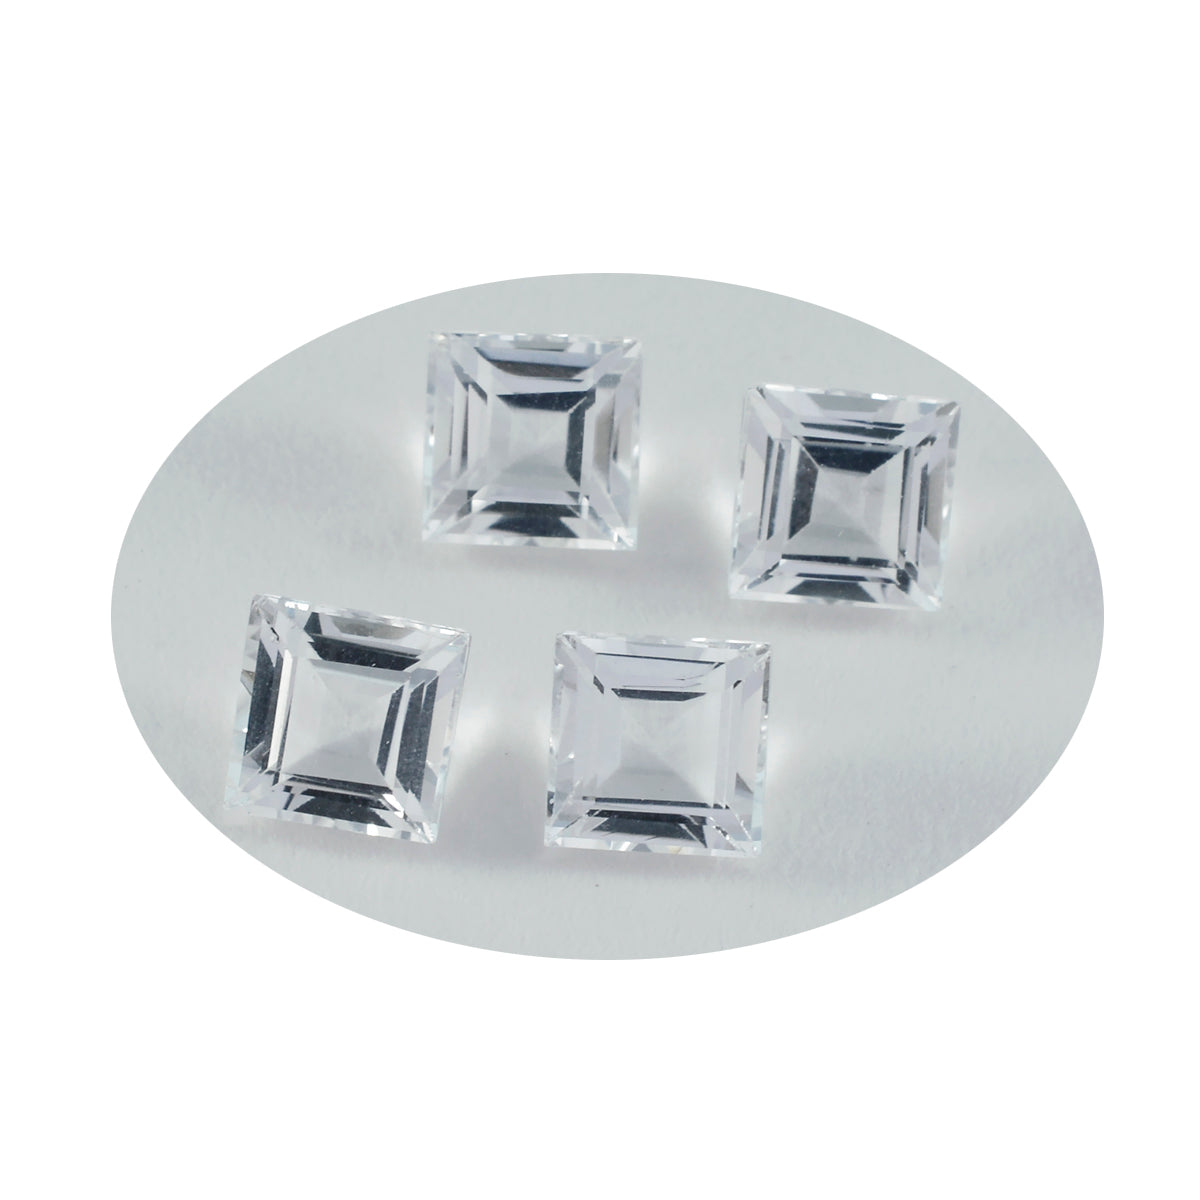 Riyogems 1 Stück weißer Kristallquarz, facettiert, 9 x 9 mm, quadratische Form, Edelsteine von ausgezeichneter Qualität